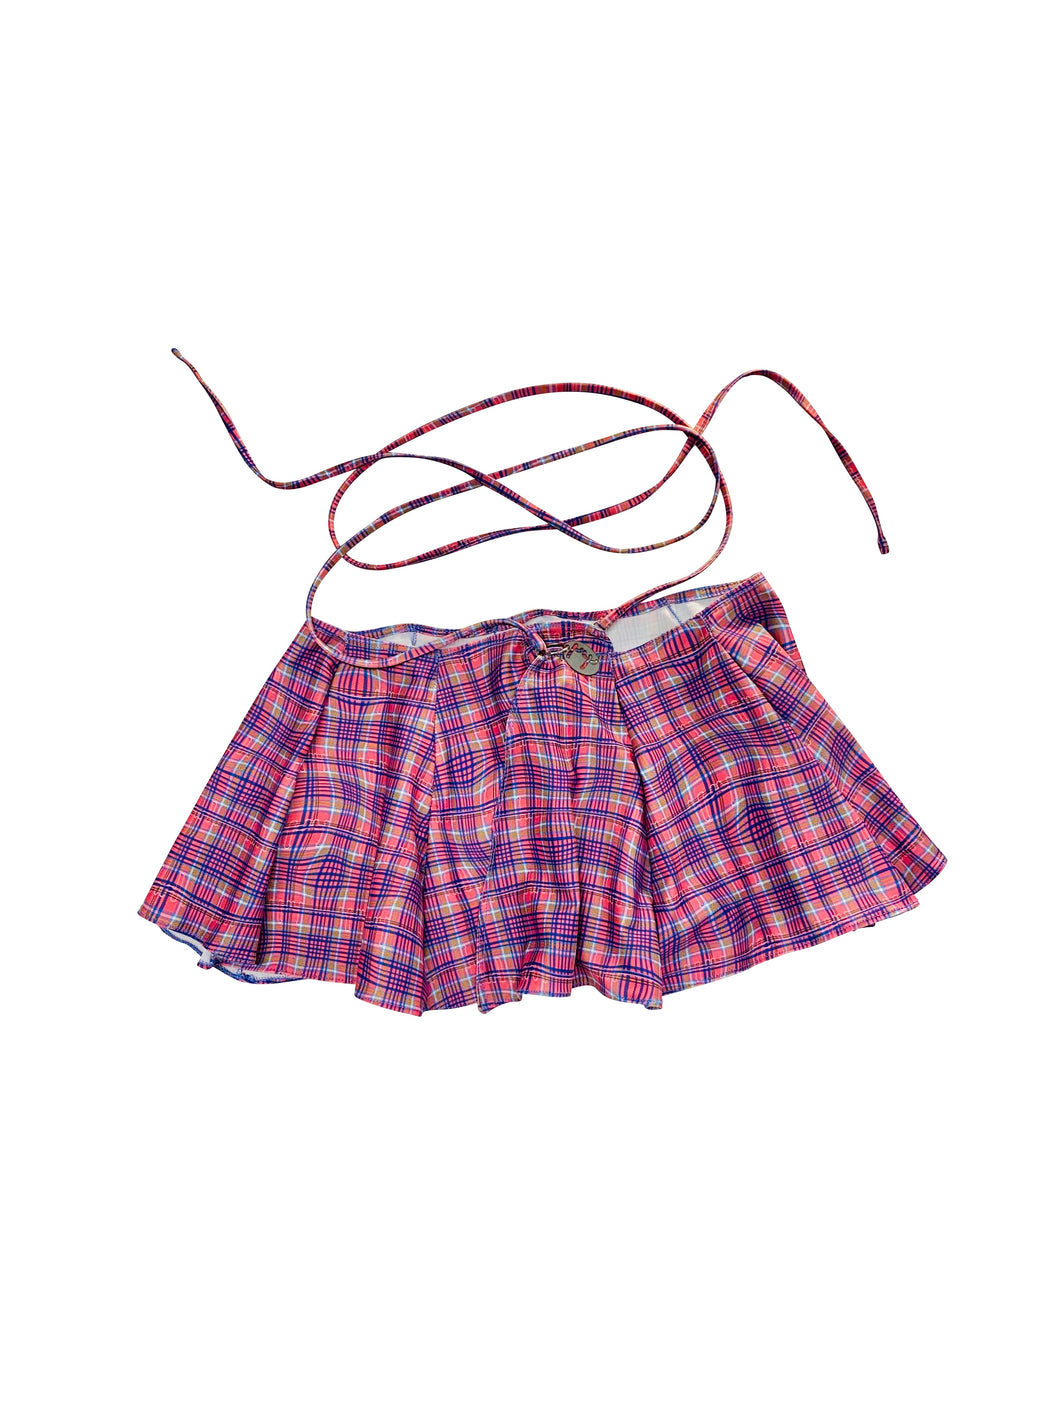 hrh mini wrap skirt in custom check